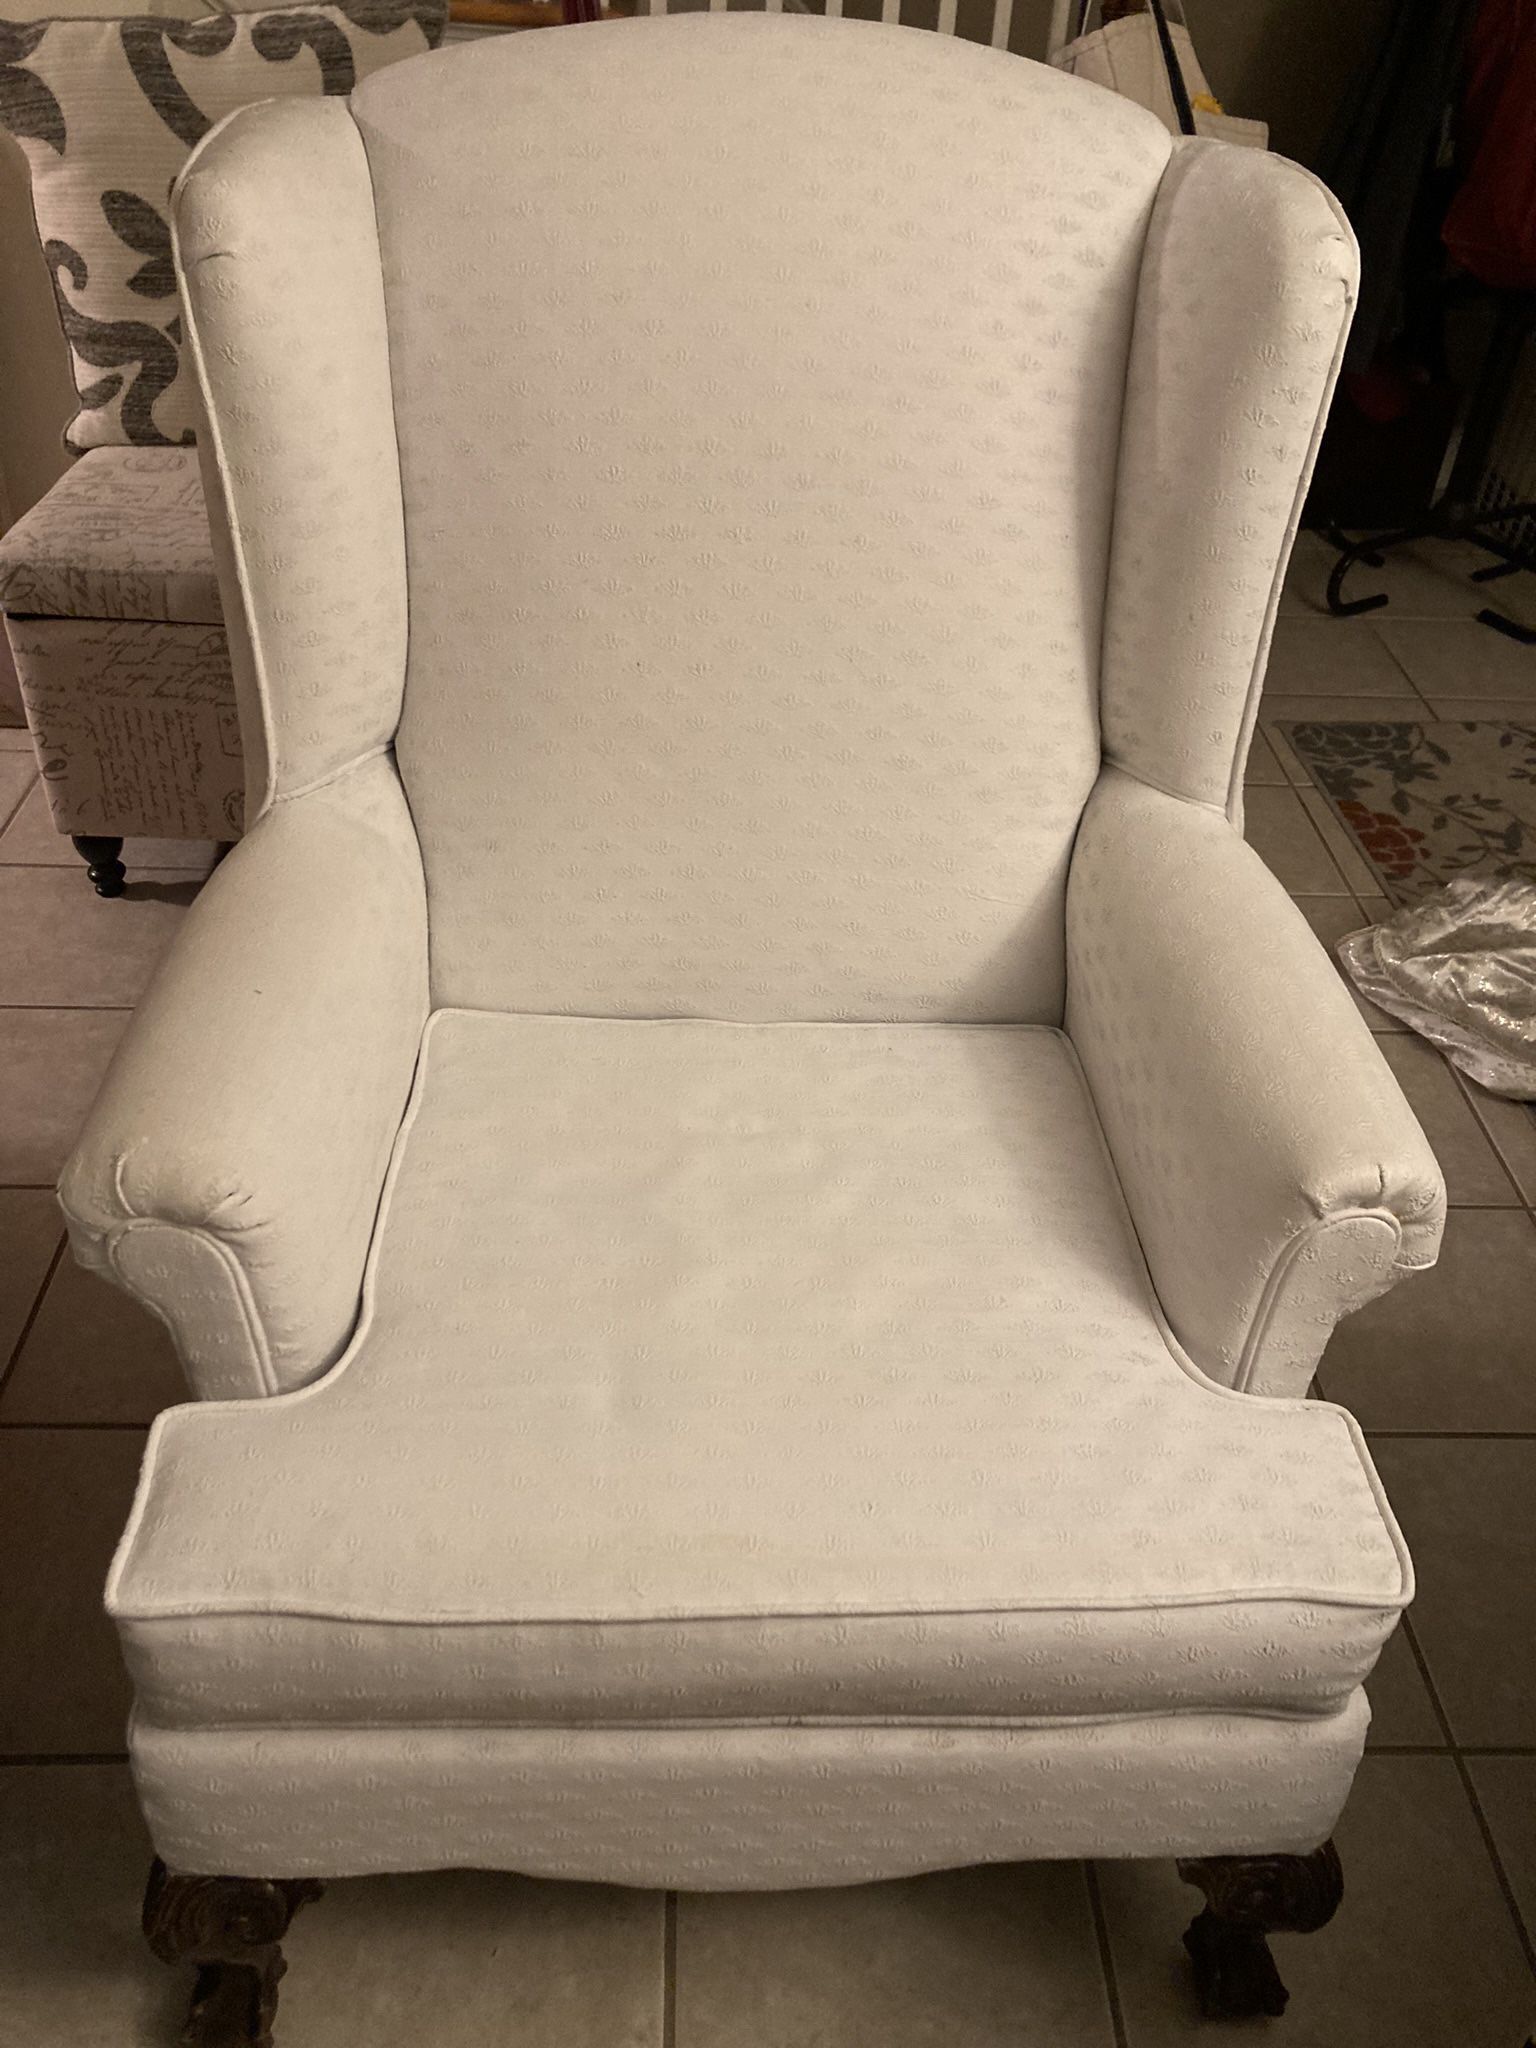 White chair